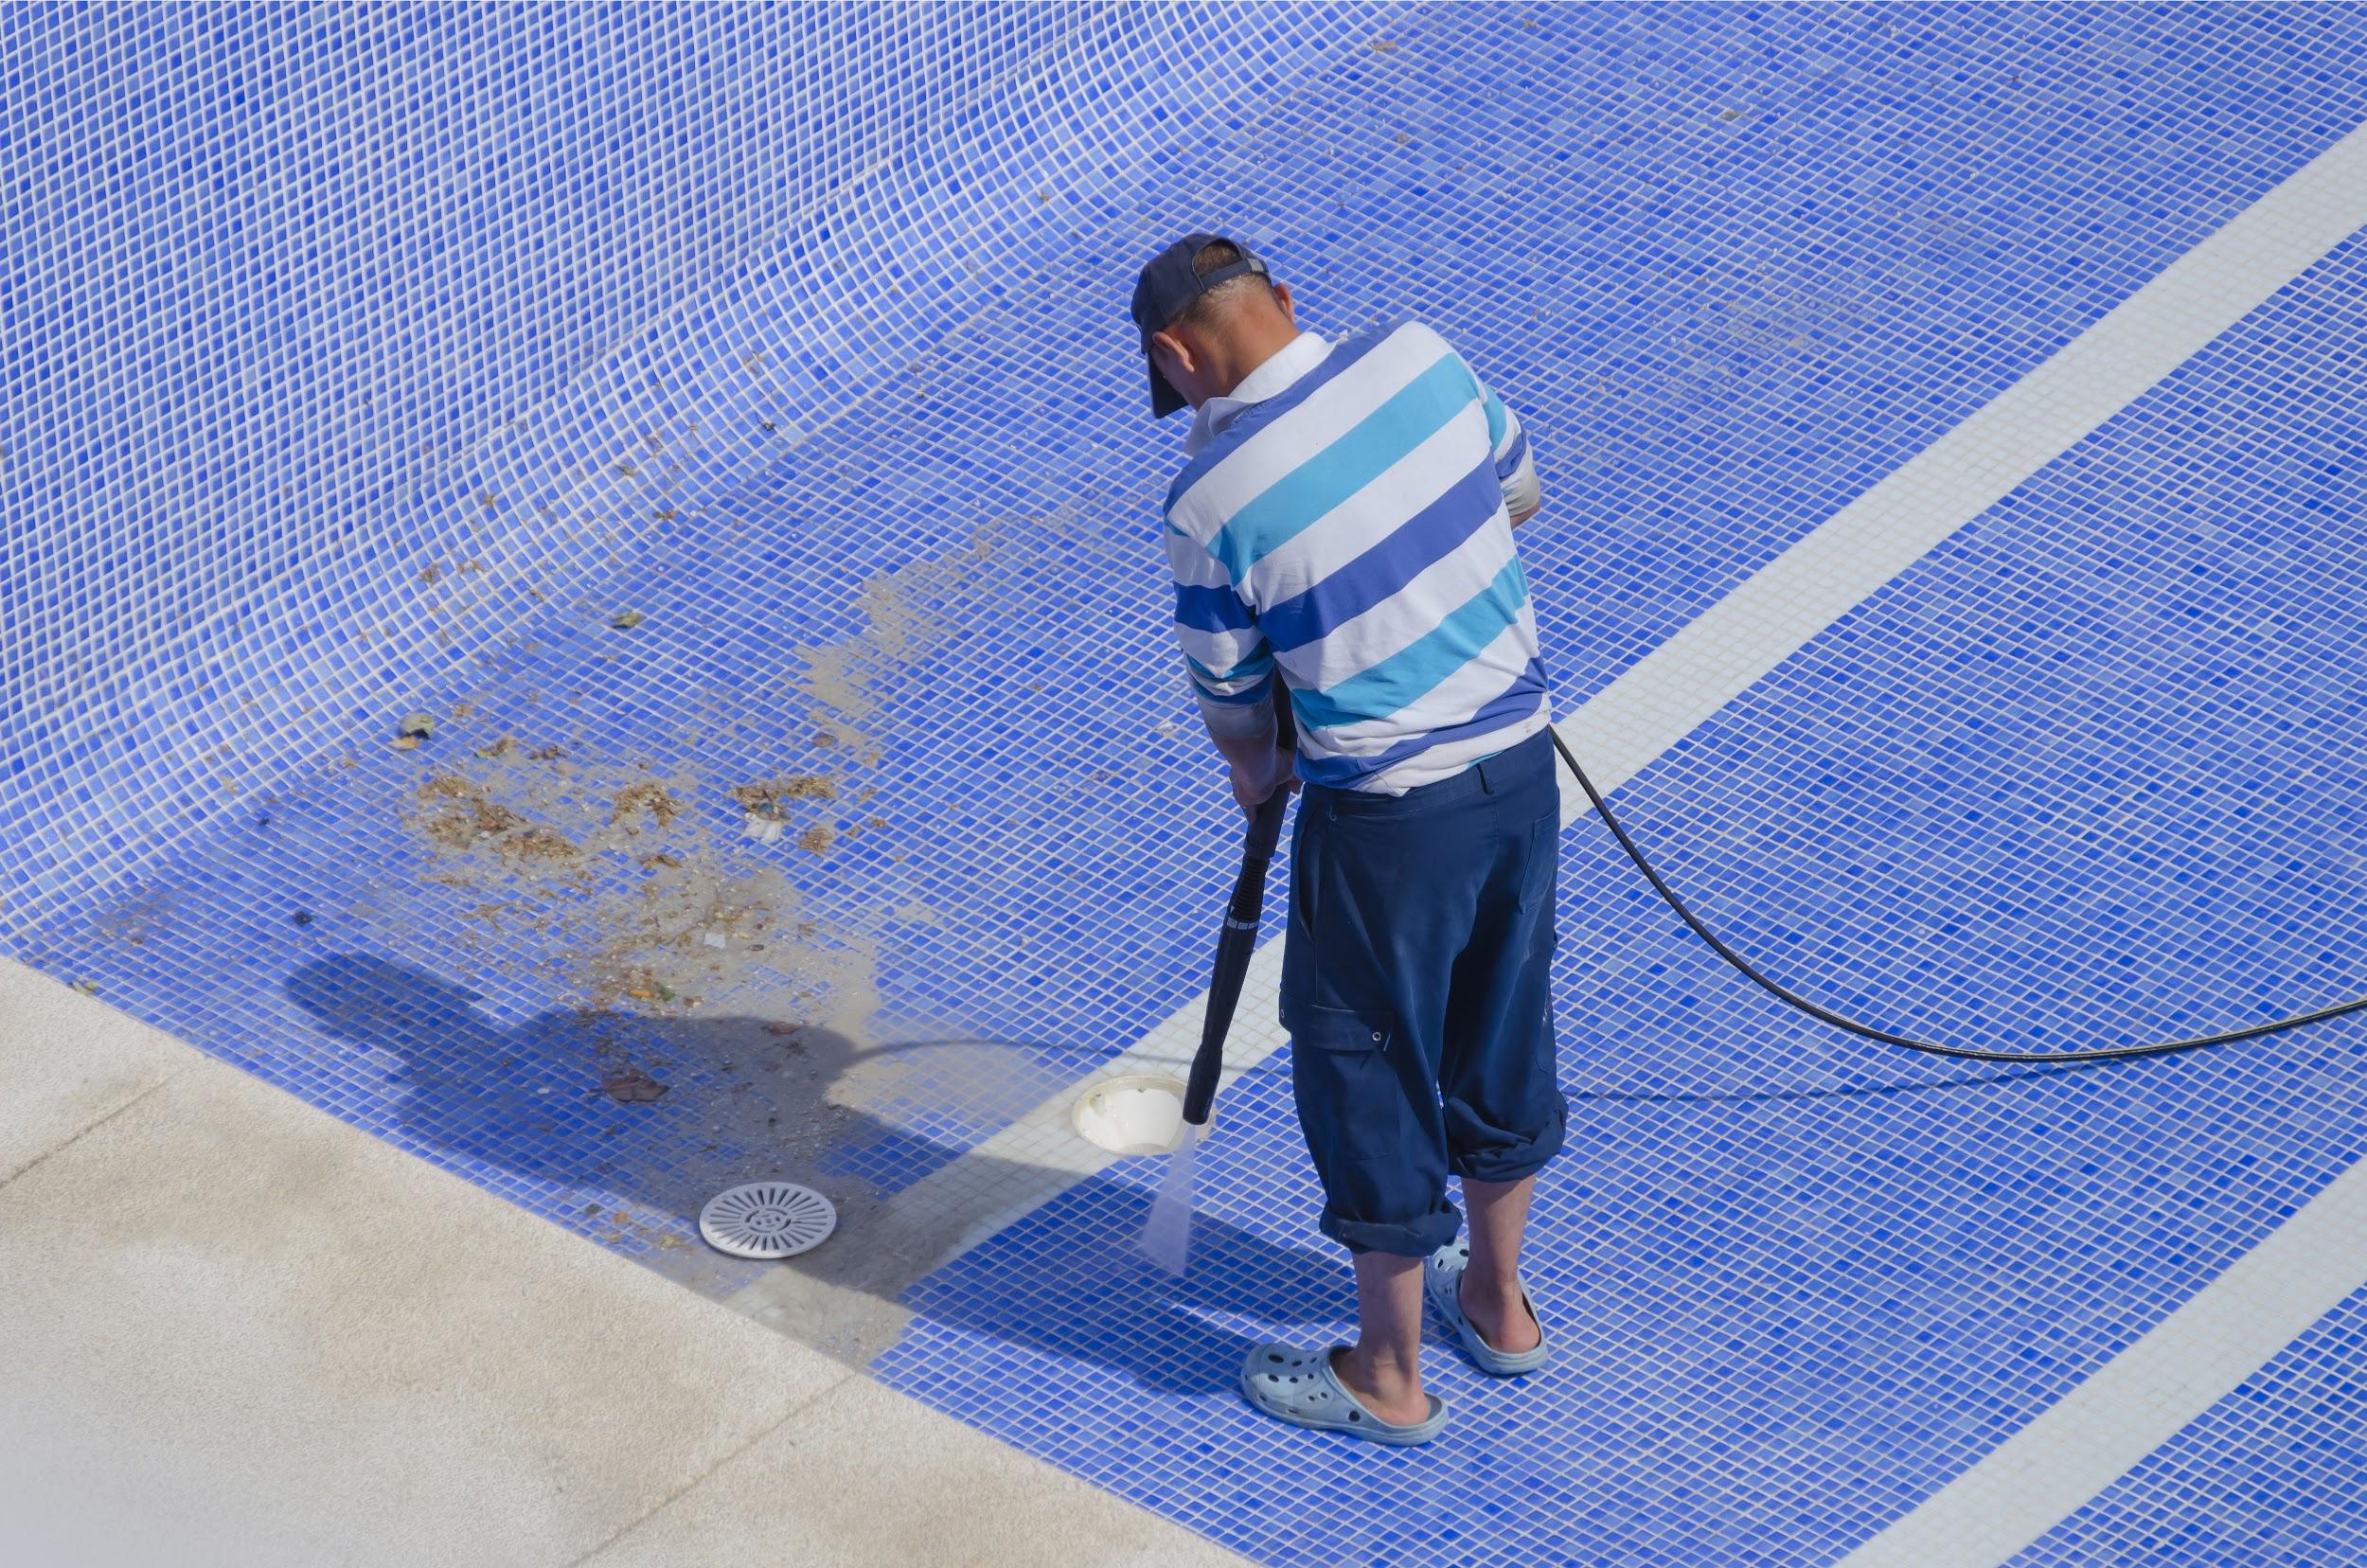 Man cleaning floor of pool